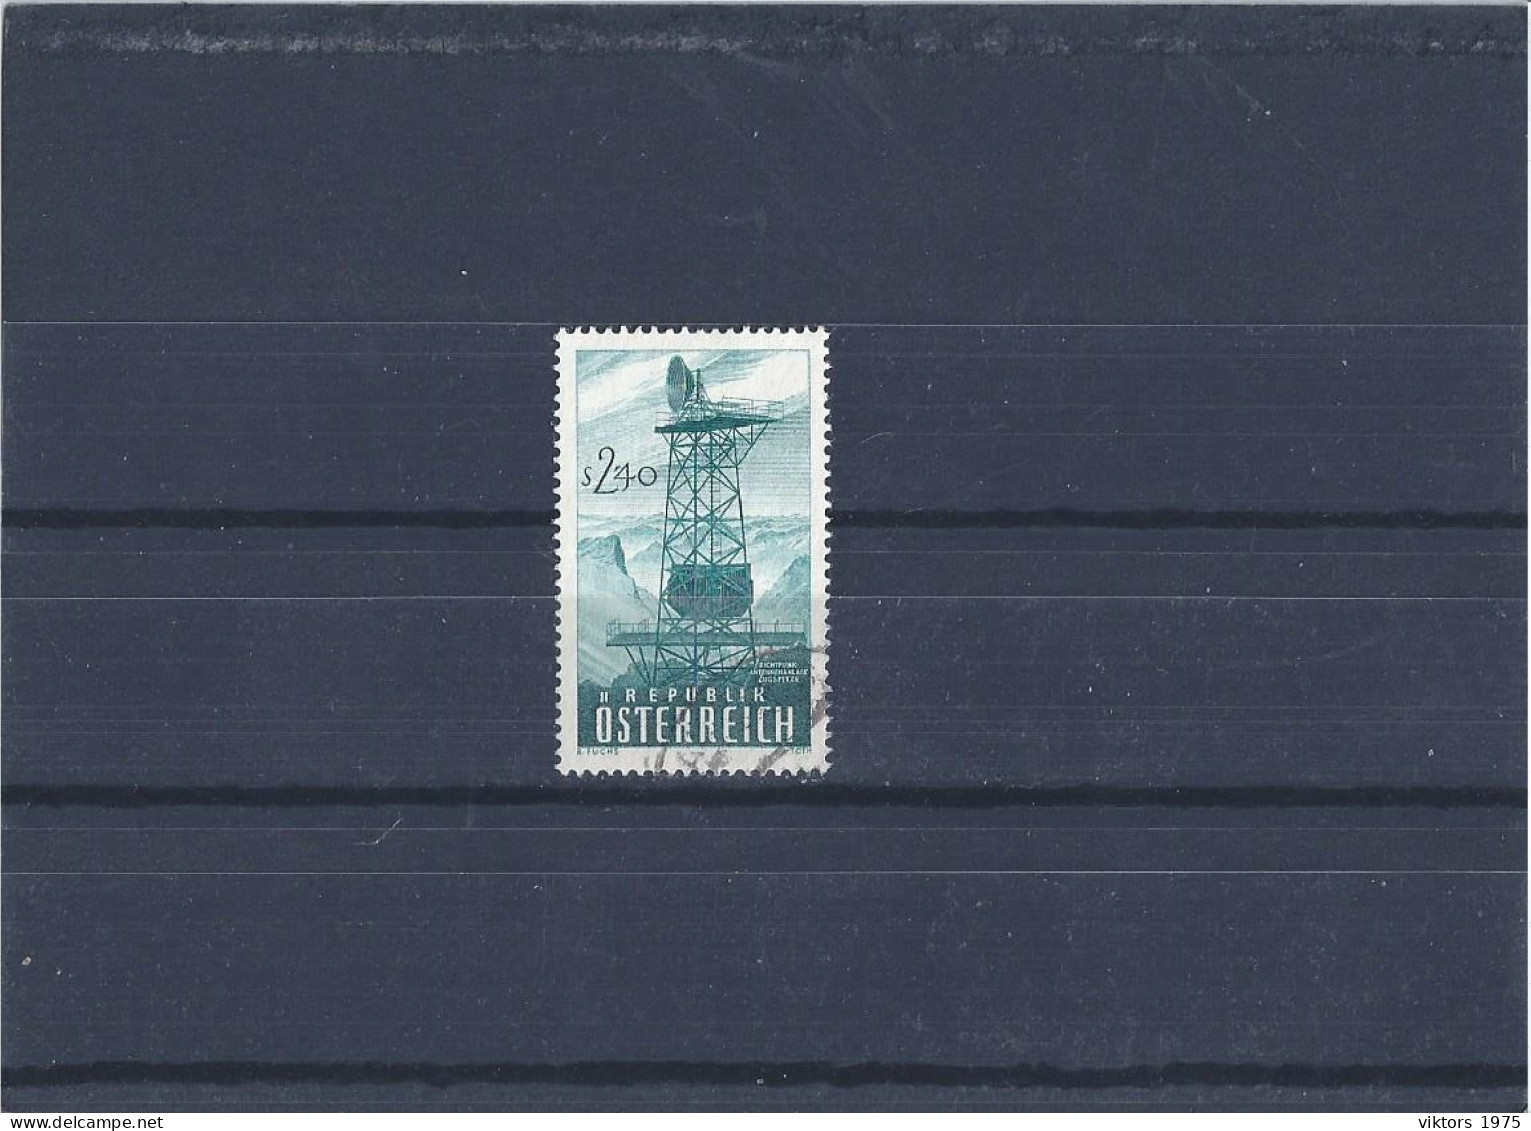 Used Stamp Nr.1068 In MICHEL Catalog - Usati